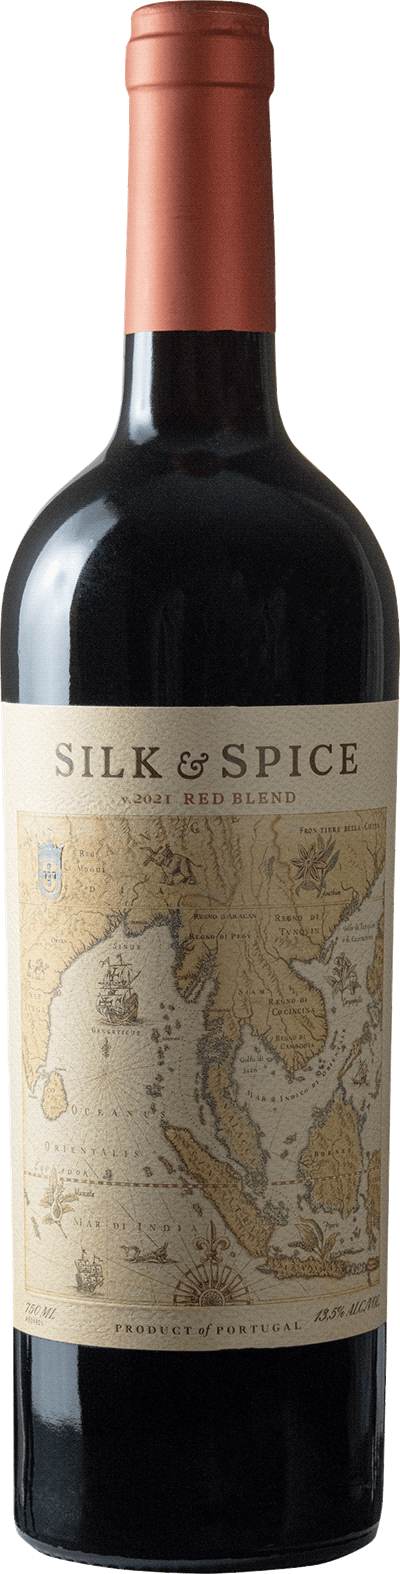 Silk & Spice Red Blend, 2021